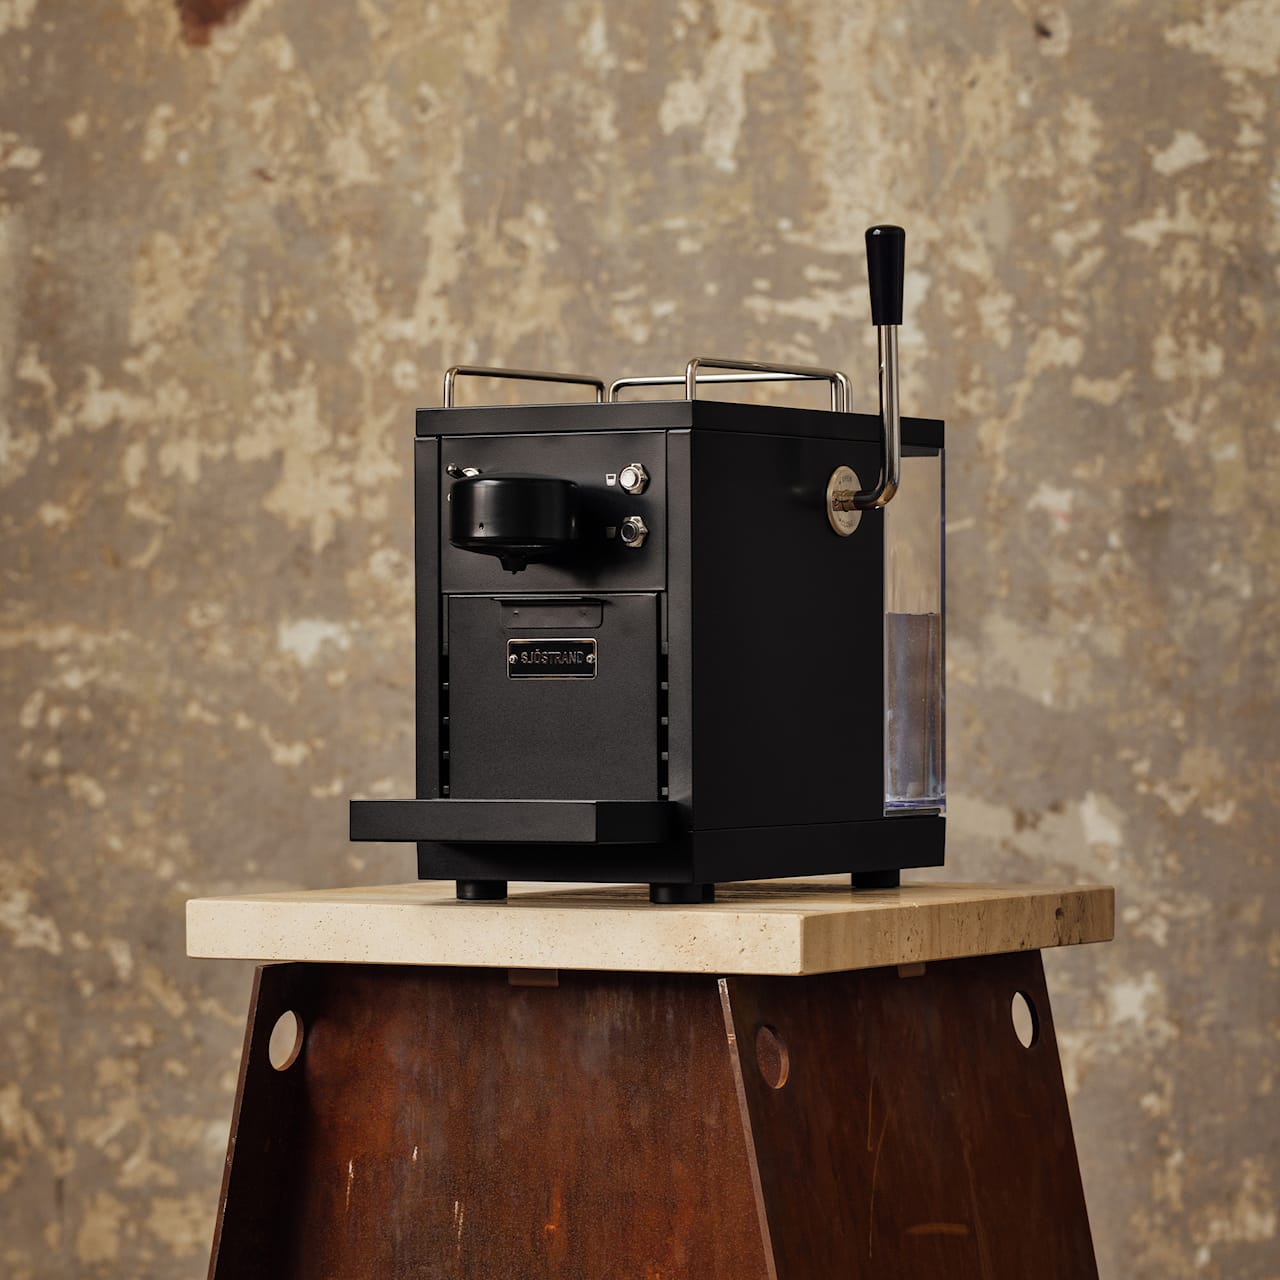 The Original - Espresso Capsule Machine, Black